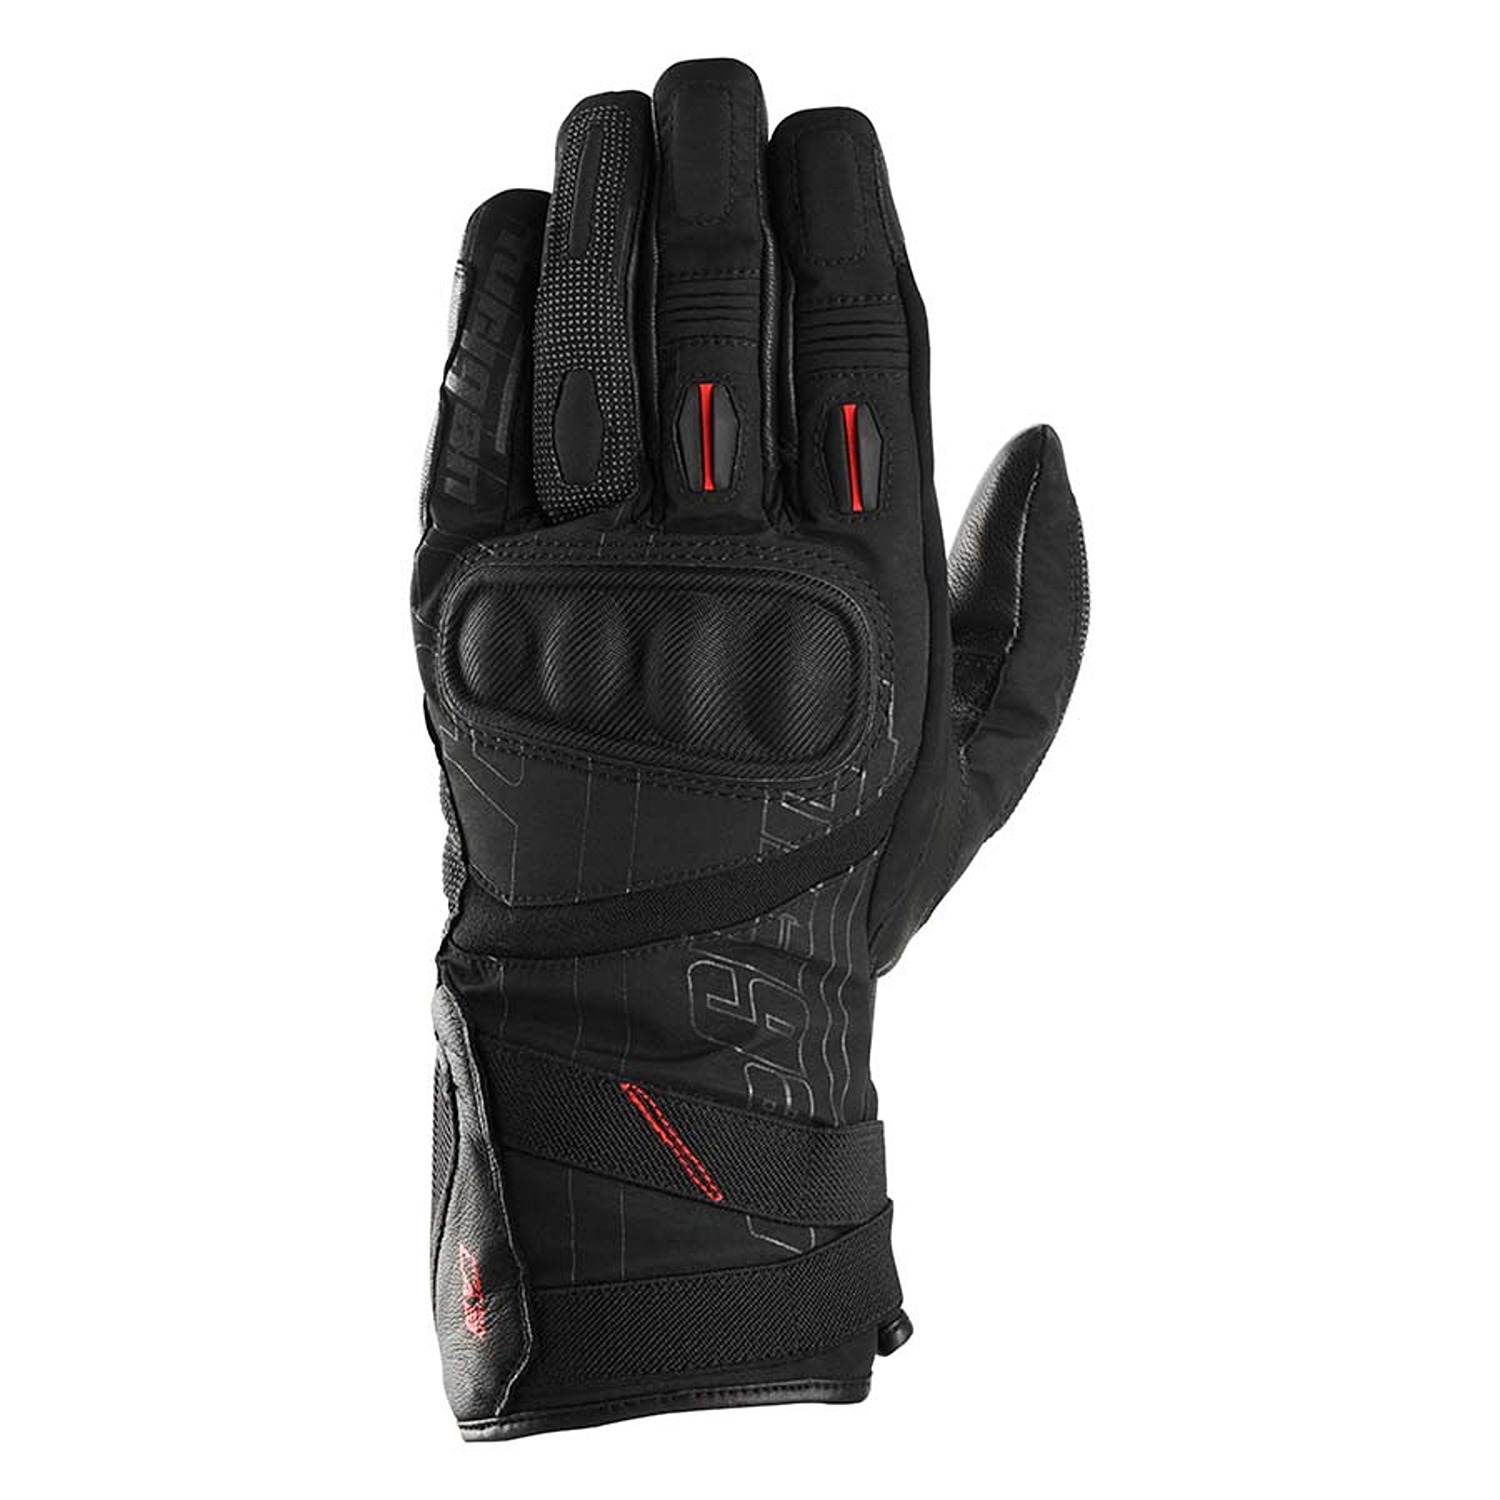 Image of Furygan Nomad Gloves Black Size M EN